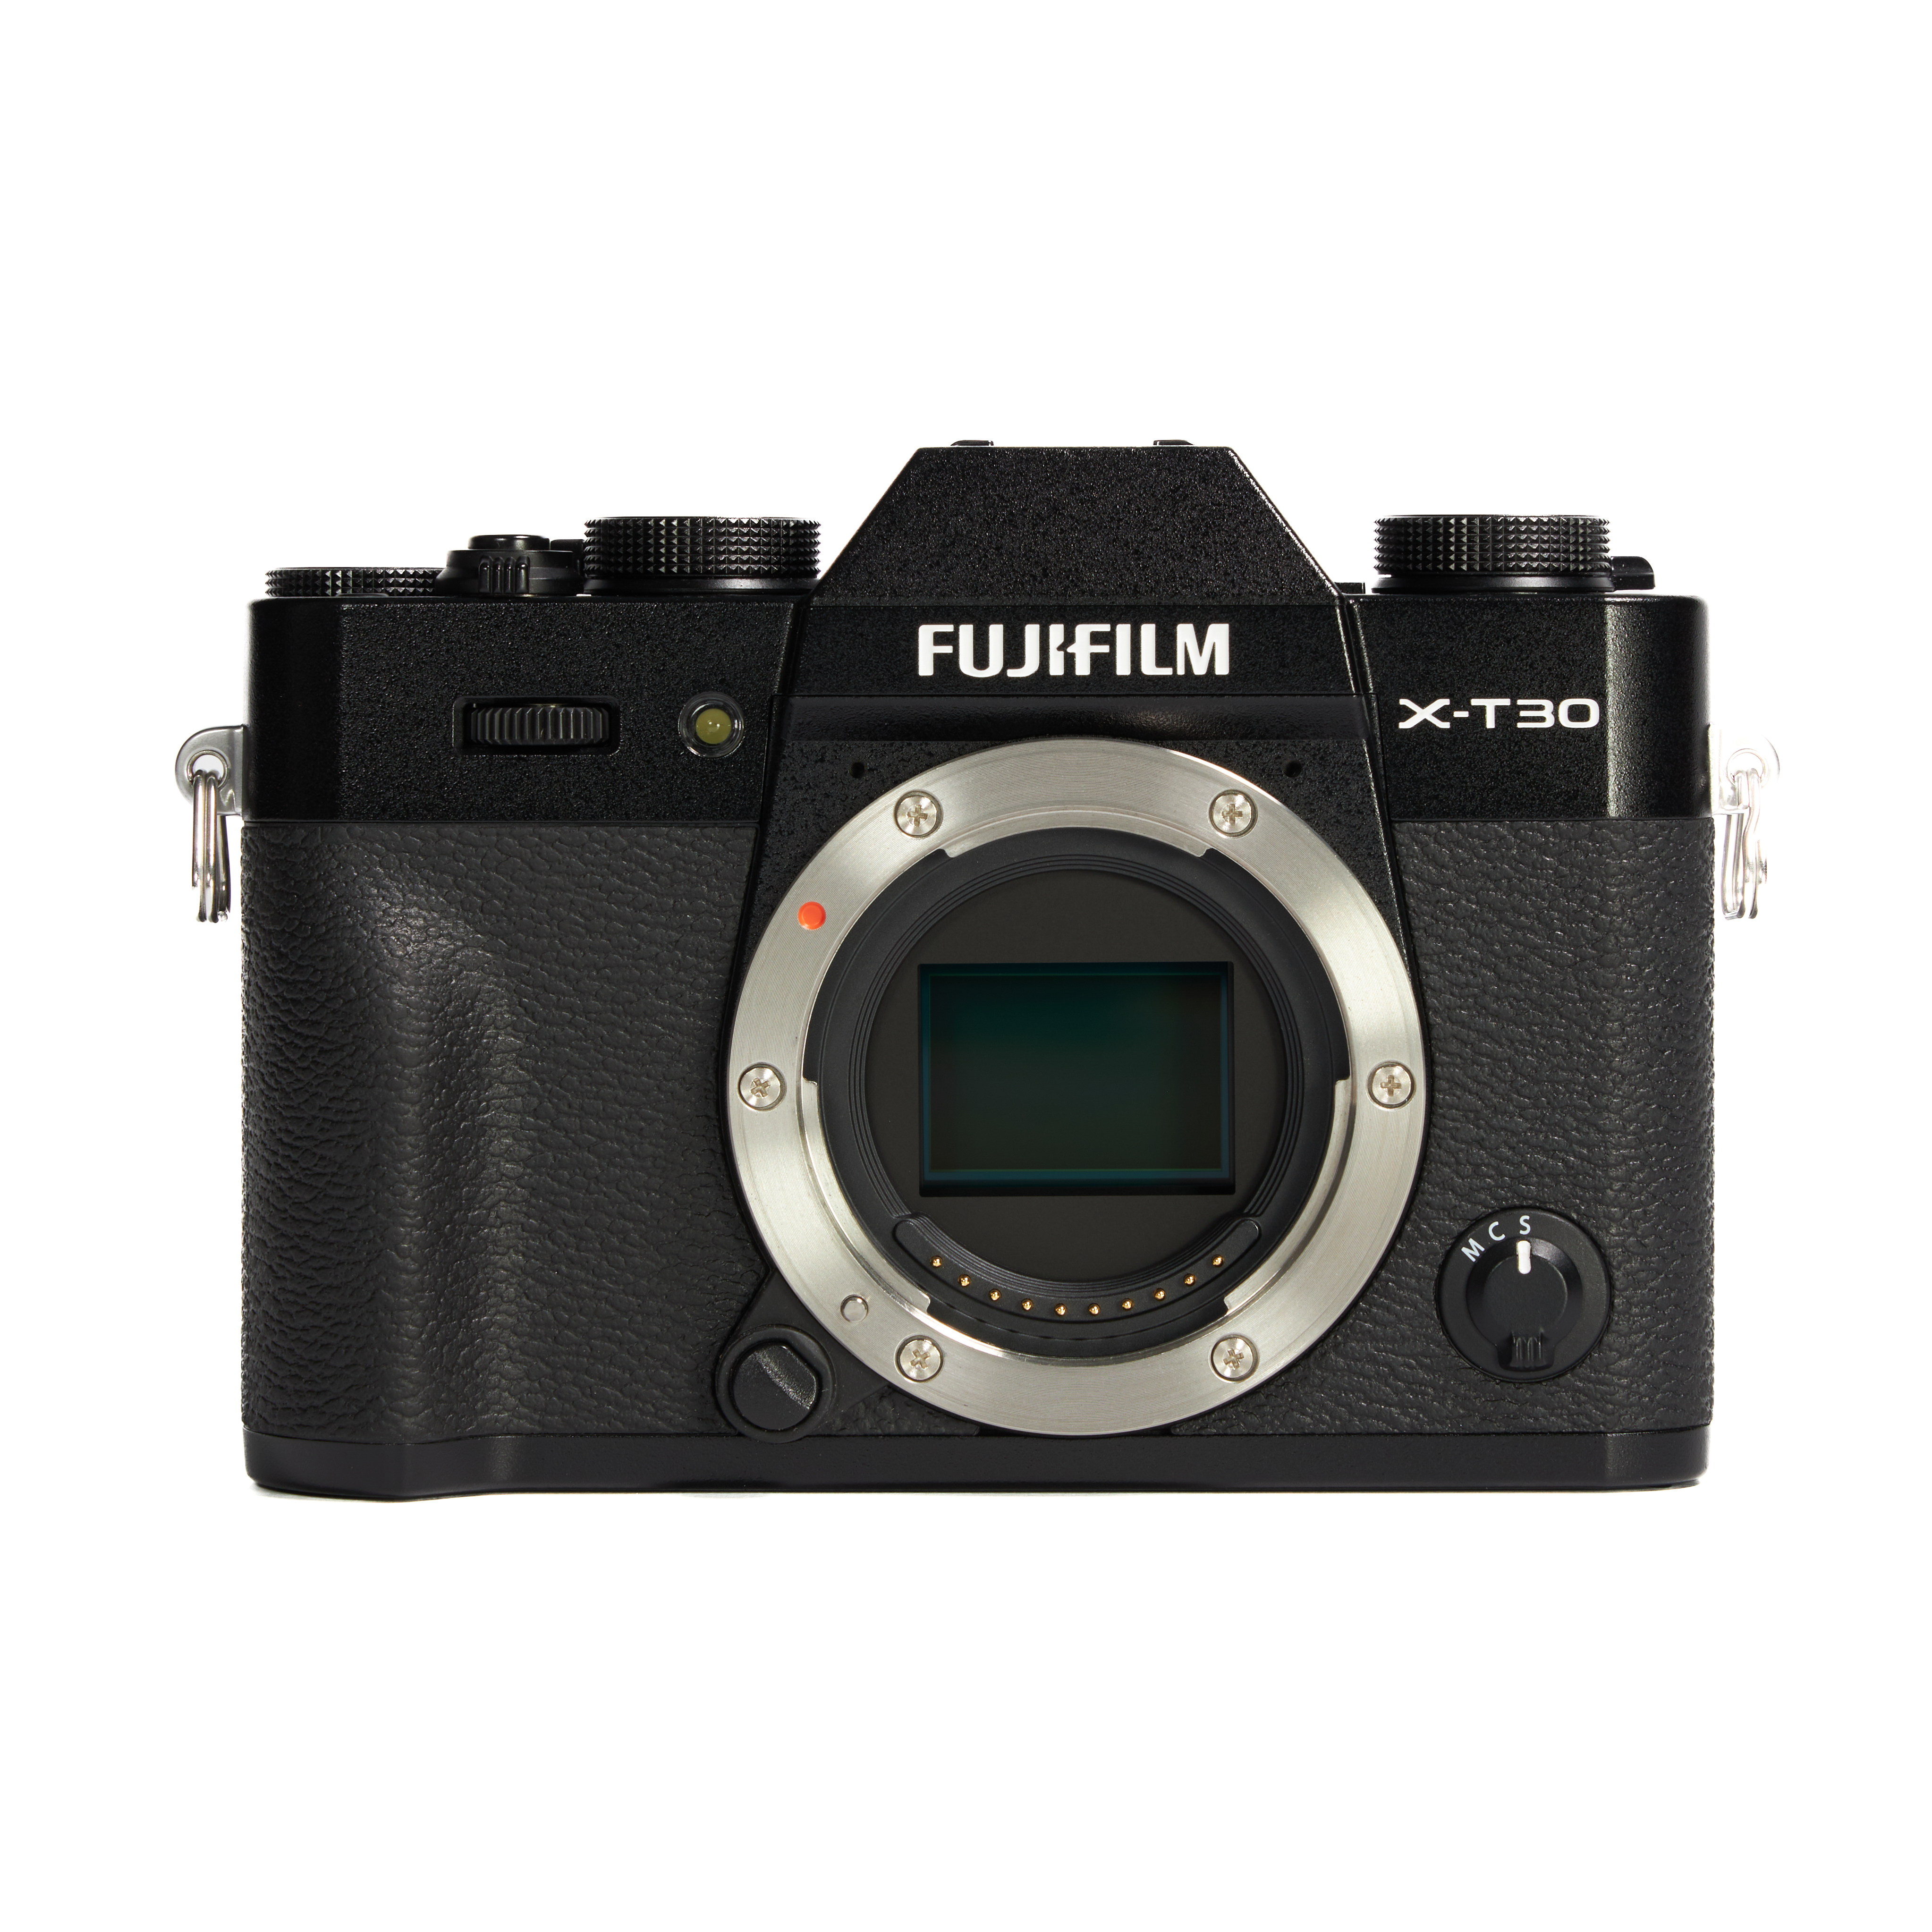 FUJIFILM（富士フイルム）のミラーレス一眼カメラを中古で買う